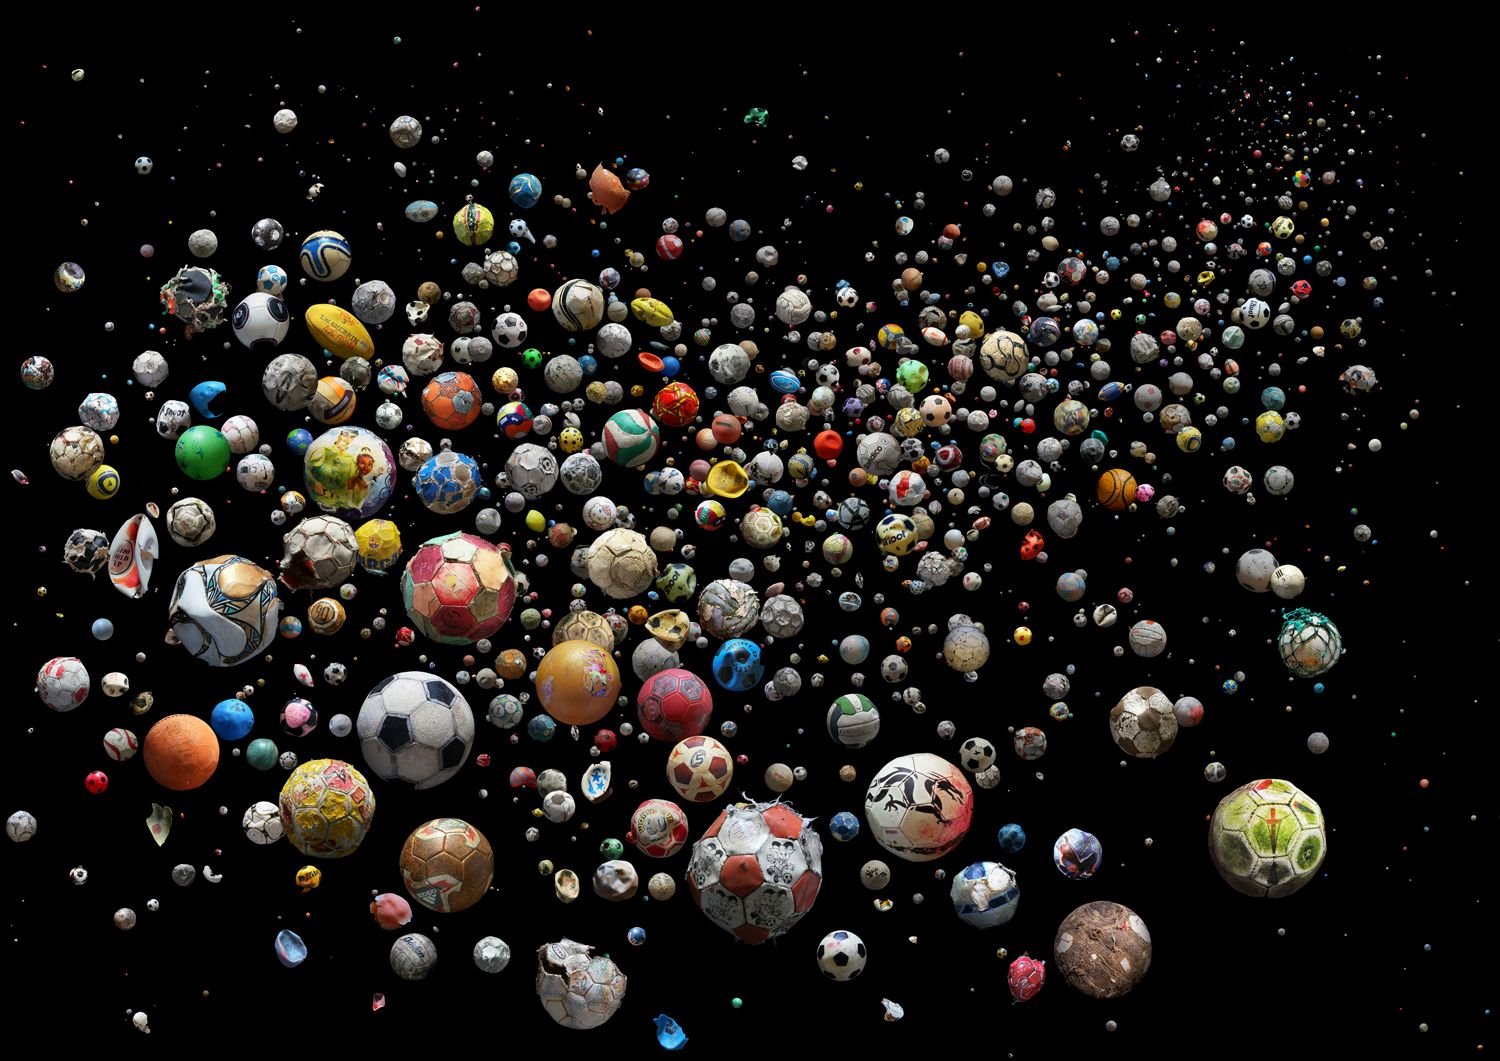 Penalty se compone de 769 desechos plásticos marinos. Son pelotas de fútbol de goma o trozos de estas. Los desechos fueron recogidos en 41 países e islas de todo el mundo. Concretamente de 144 playas diferentes en tan solo 4 mese. Foto: Mandy Barker.